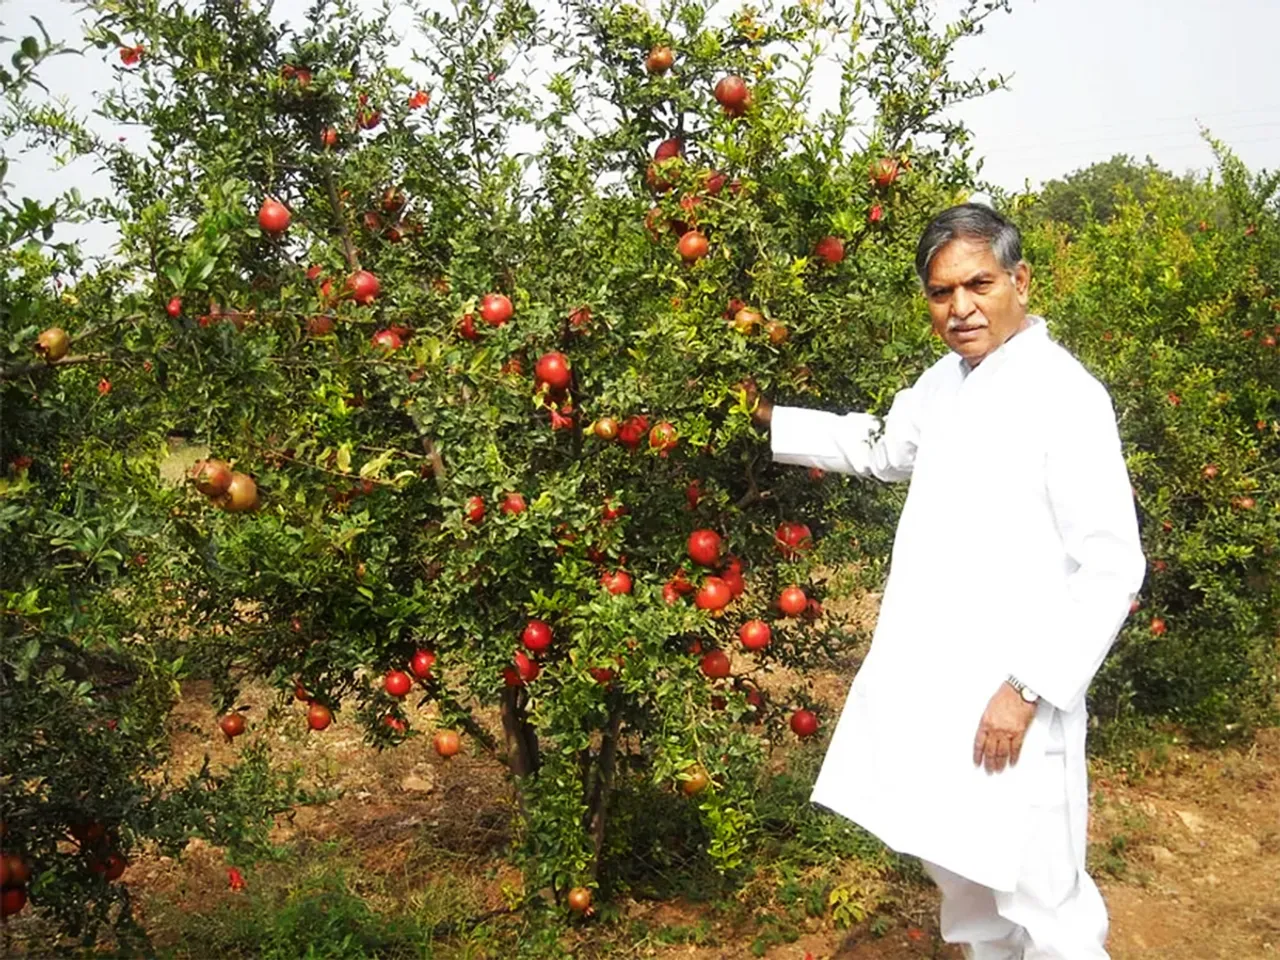 Muttuluri Narasimhappa at his farm in Anantapur, Andhra Pradesh